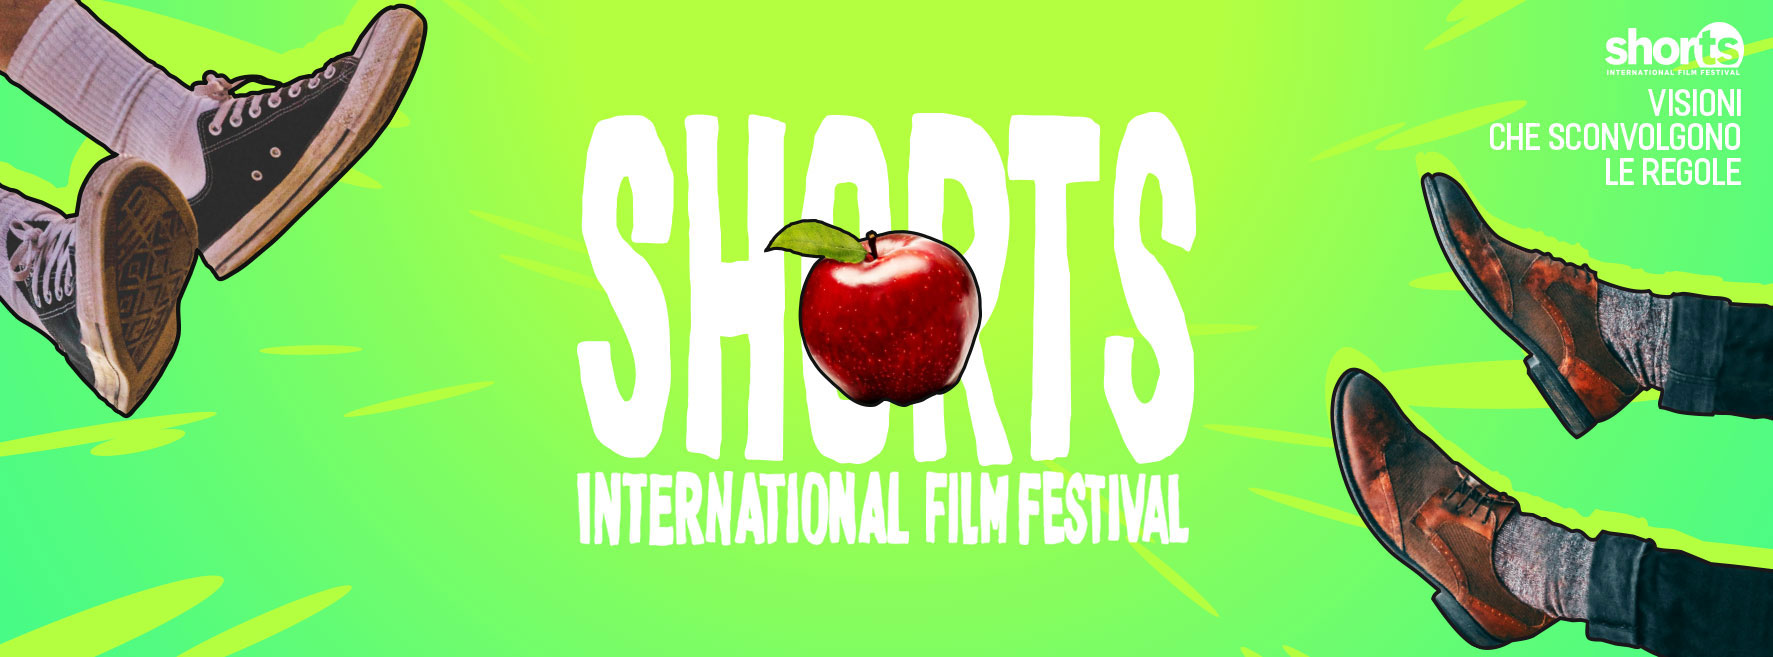 ShorTS International Film Festival: la realtà virtuale raccontata dagli occhi dei suoi protagonisti